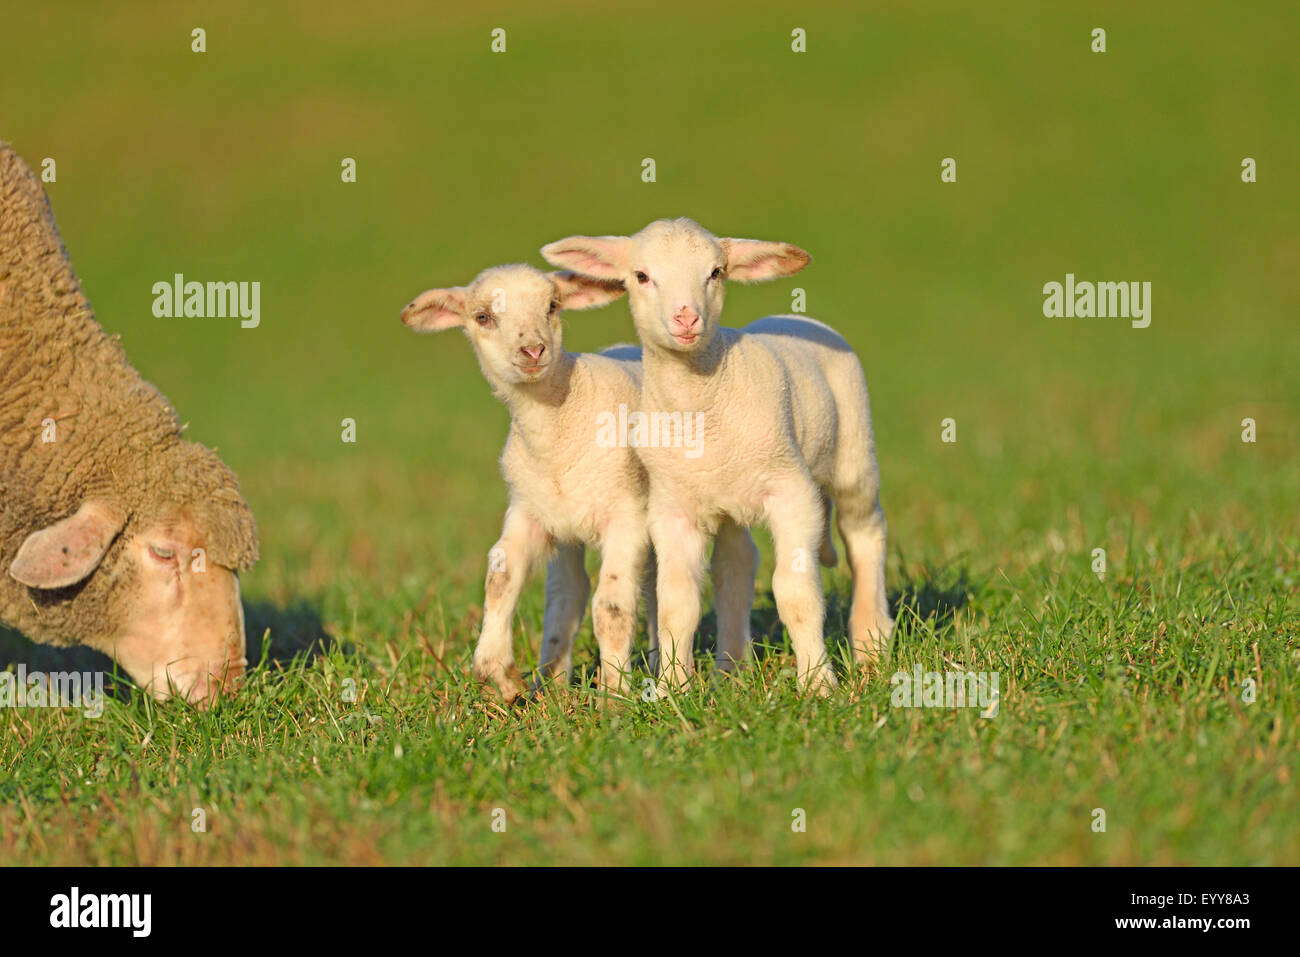 Ovejas domésticas (Ovis ammon f. aries), dos pequeños corderos parados juntos en una pastura, Alemania Foto de stock